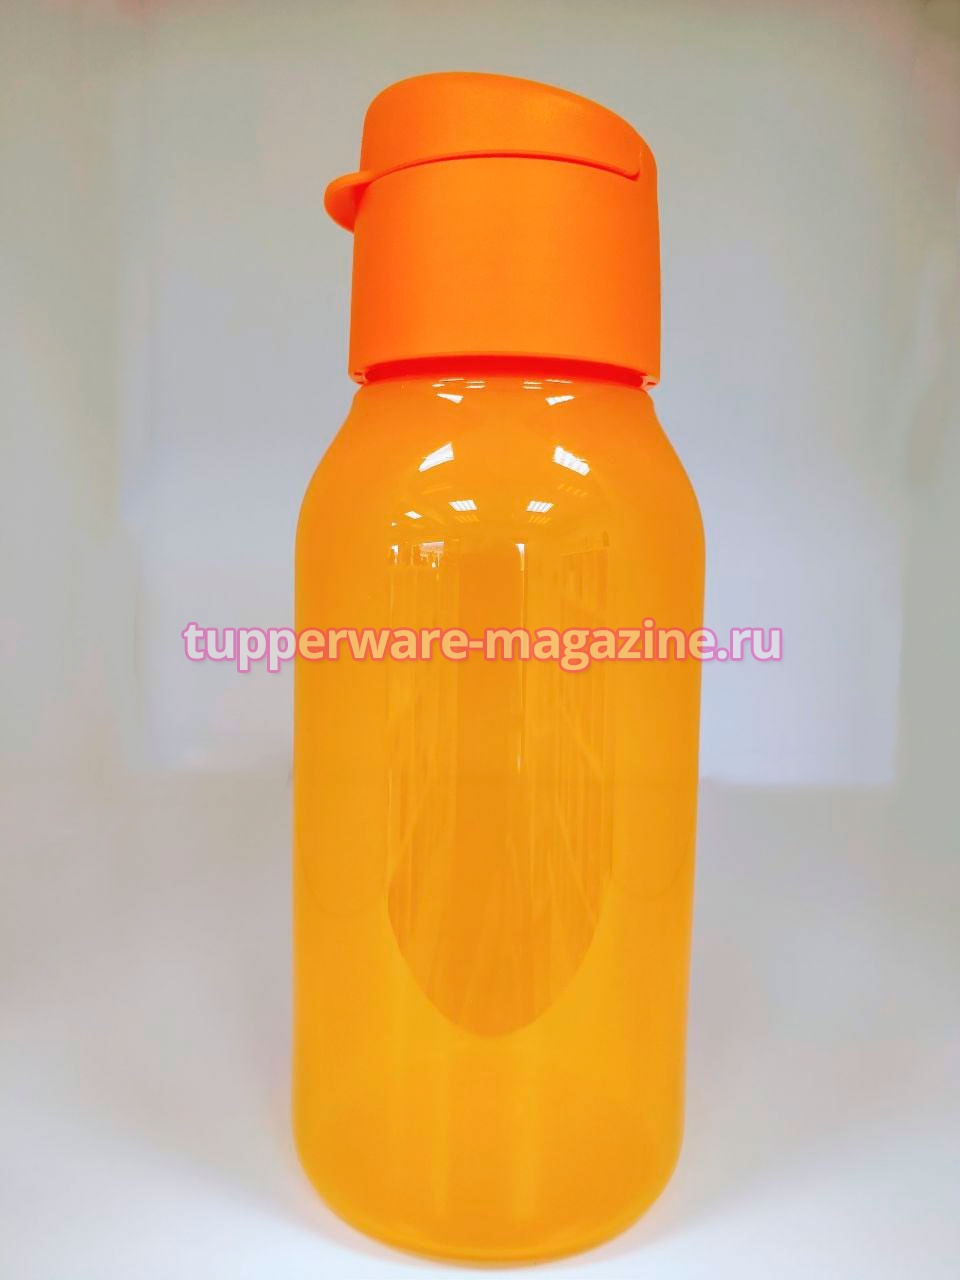 Эко-бутылка мини (350) мл в оранжевом цвете с клапаном